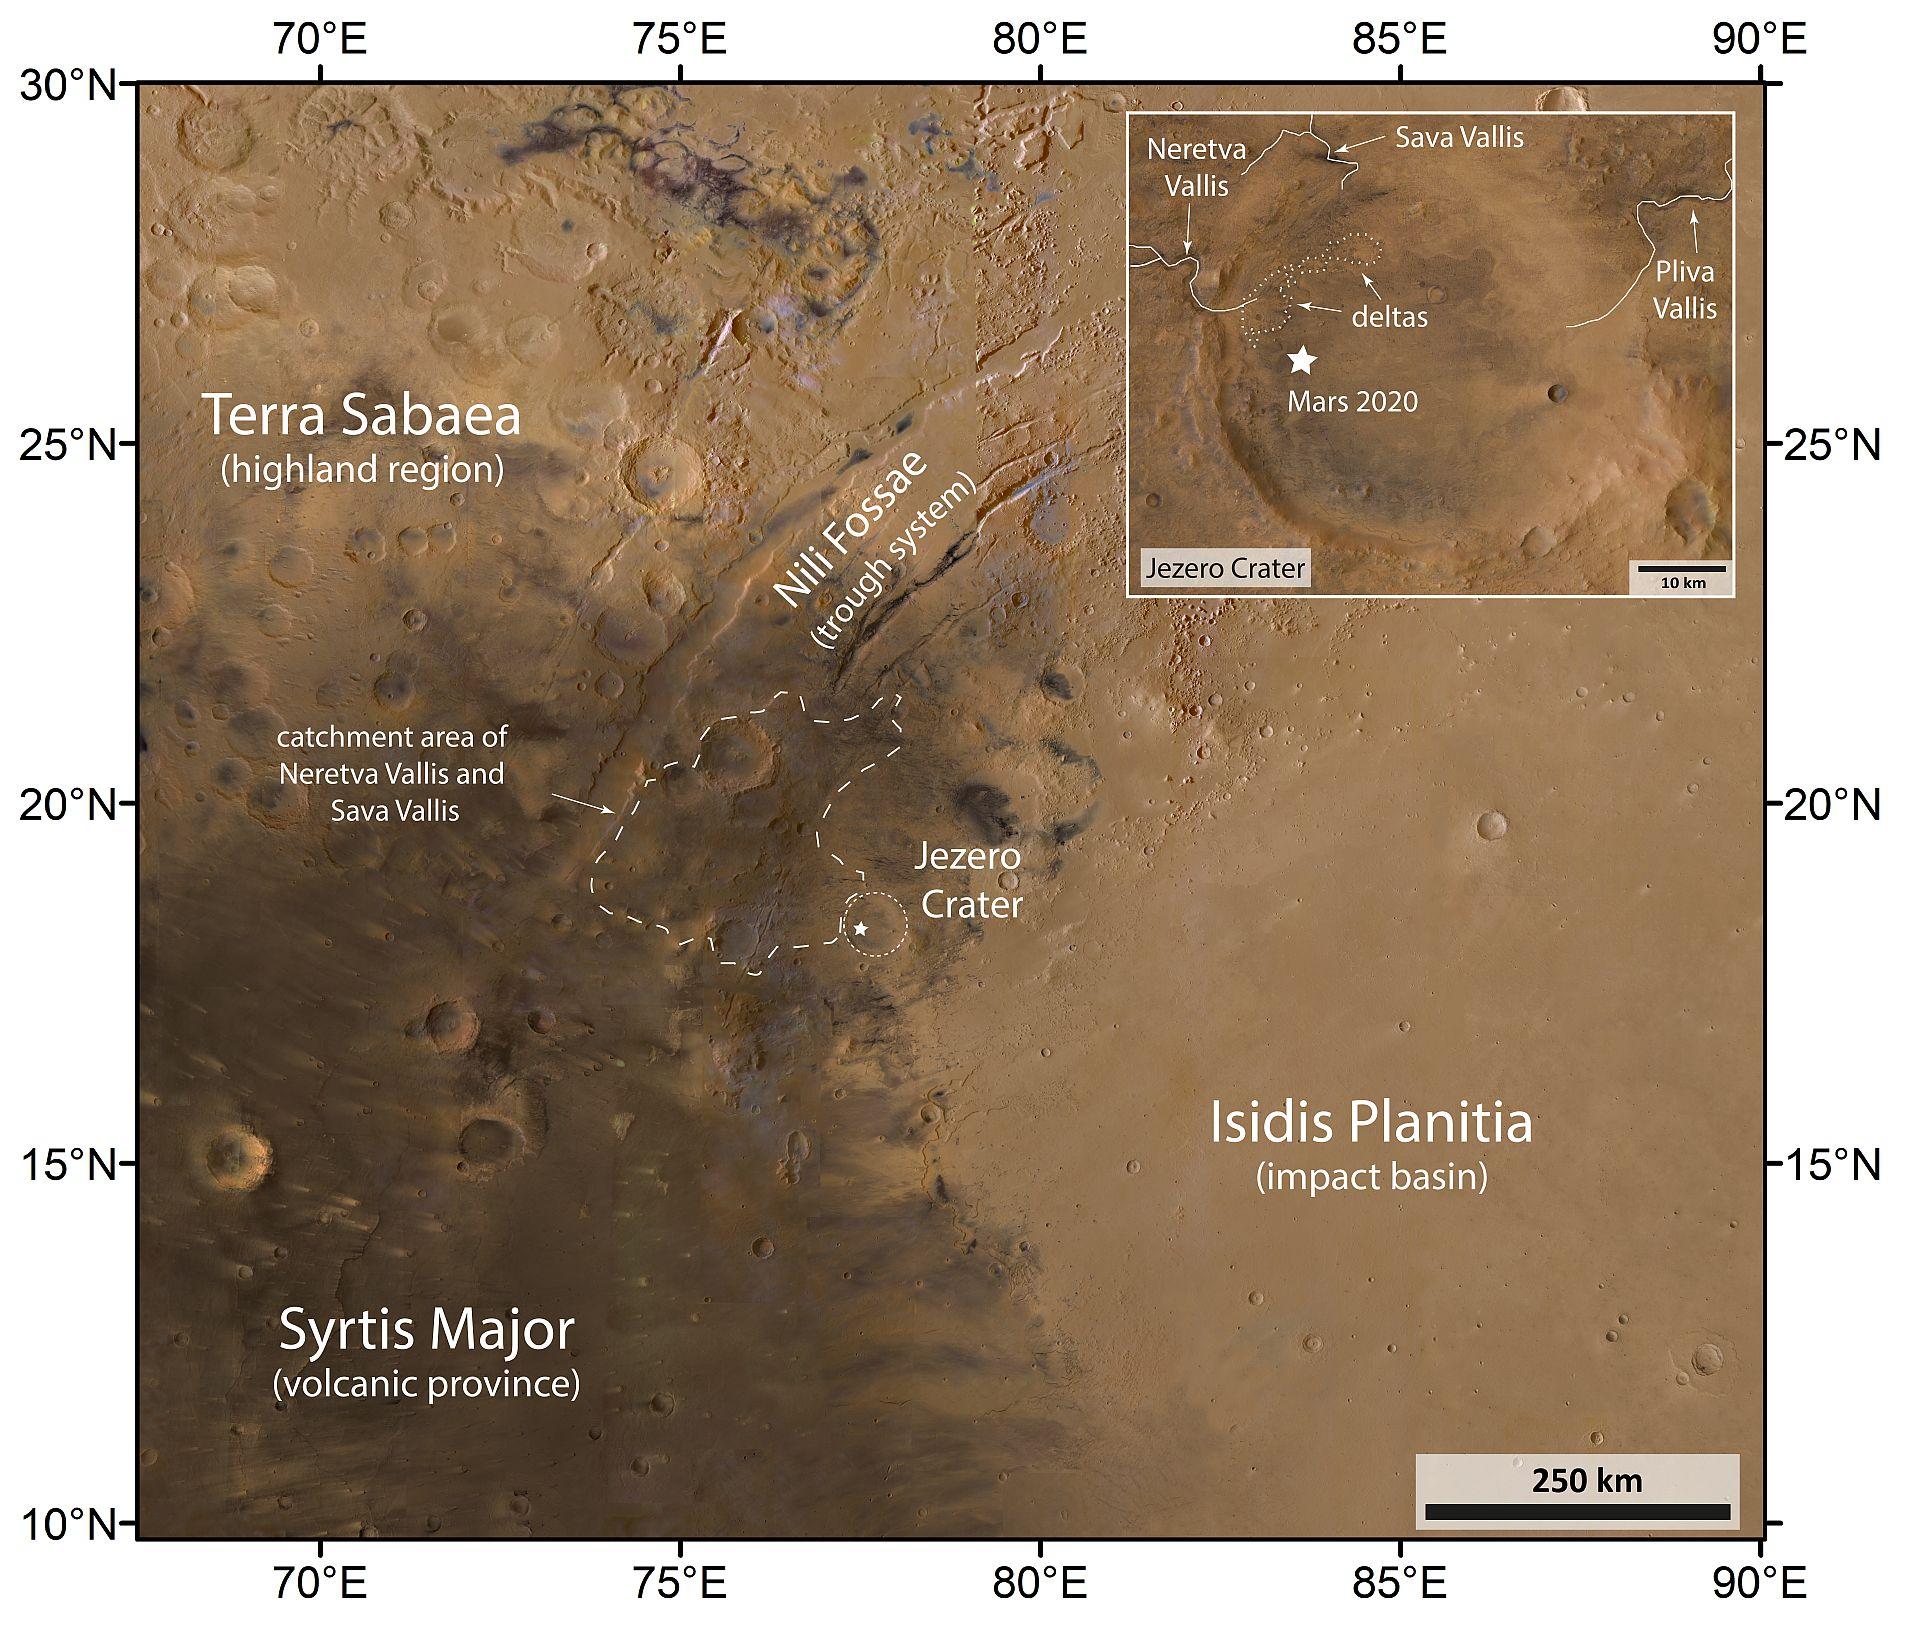 Lataj wokół krateru Jezero na Marsie w tym nowym filmie